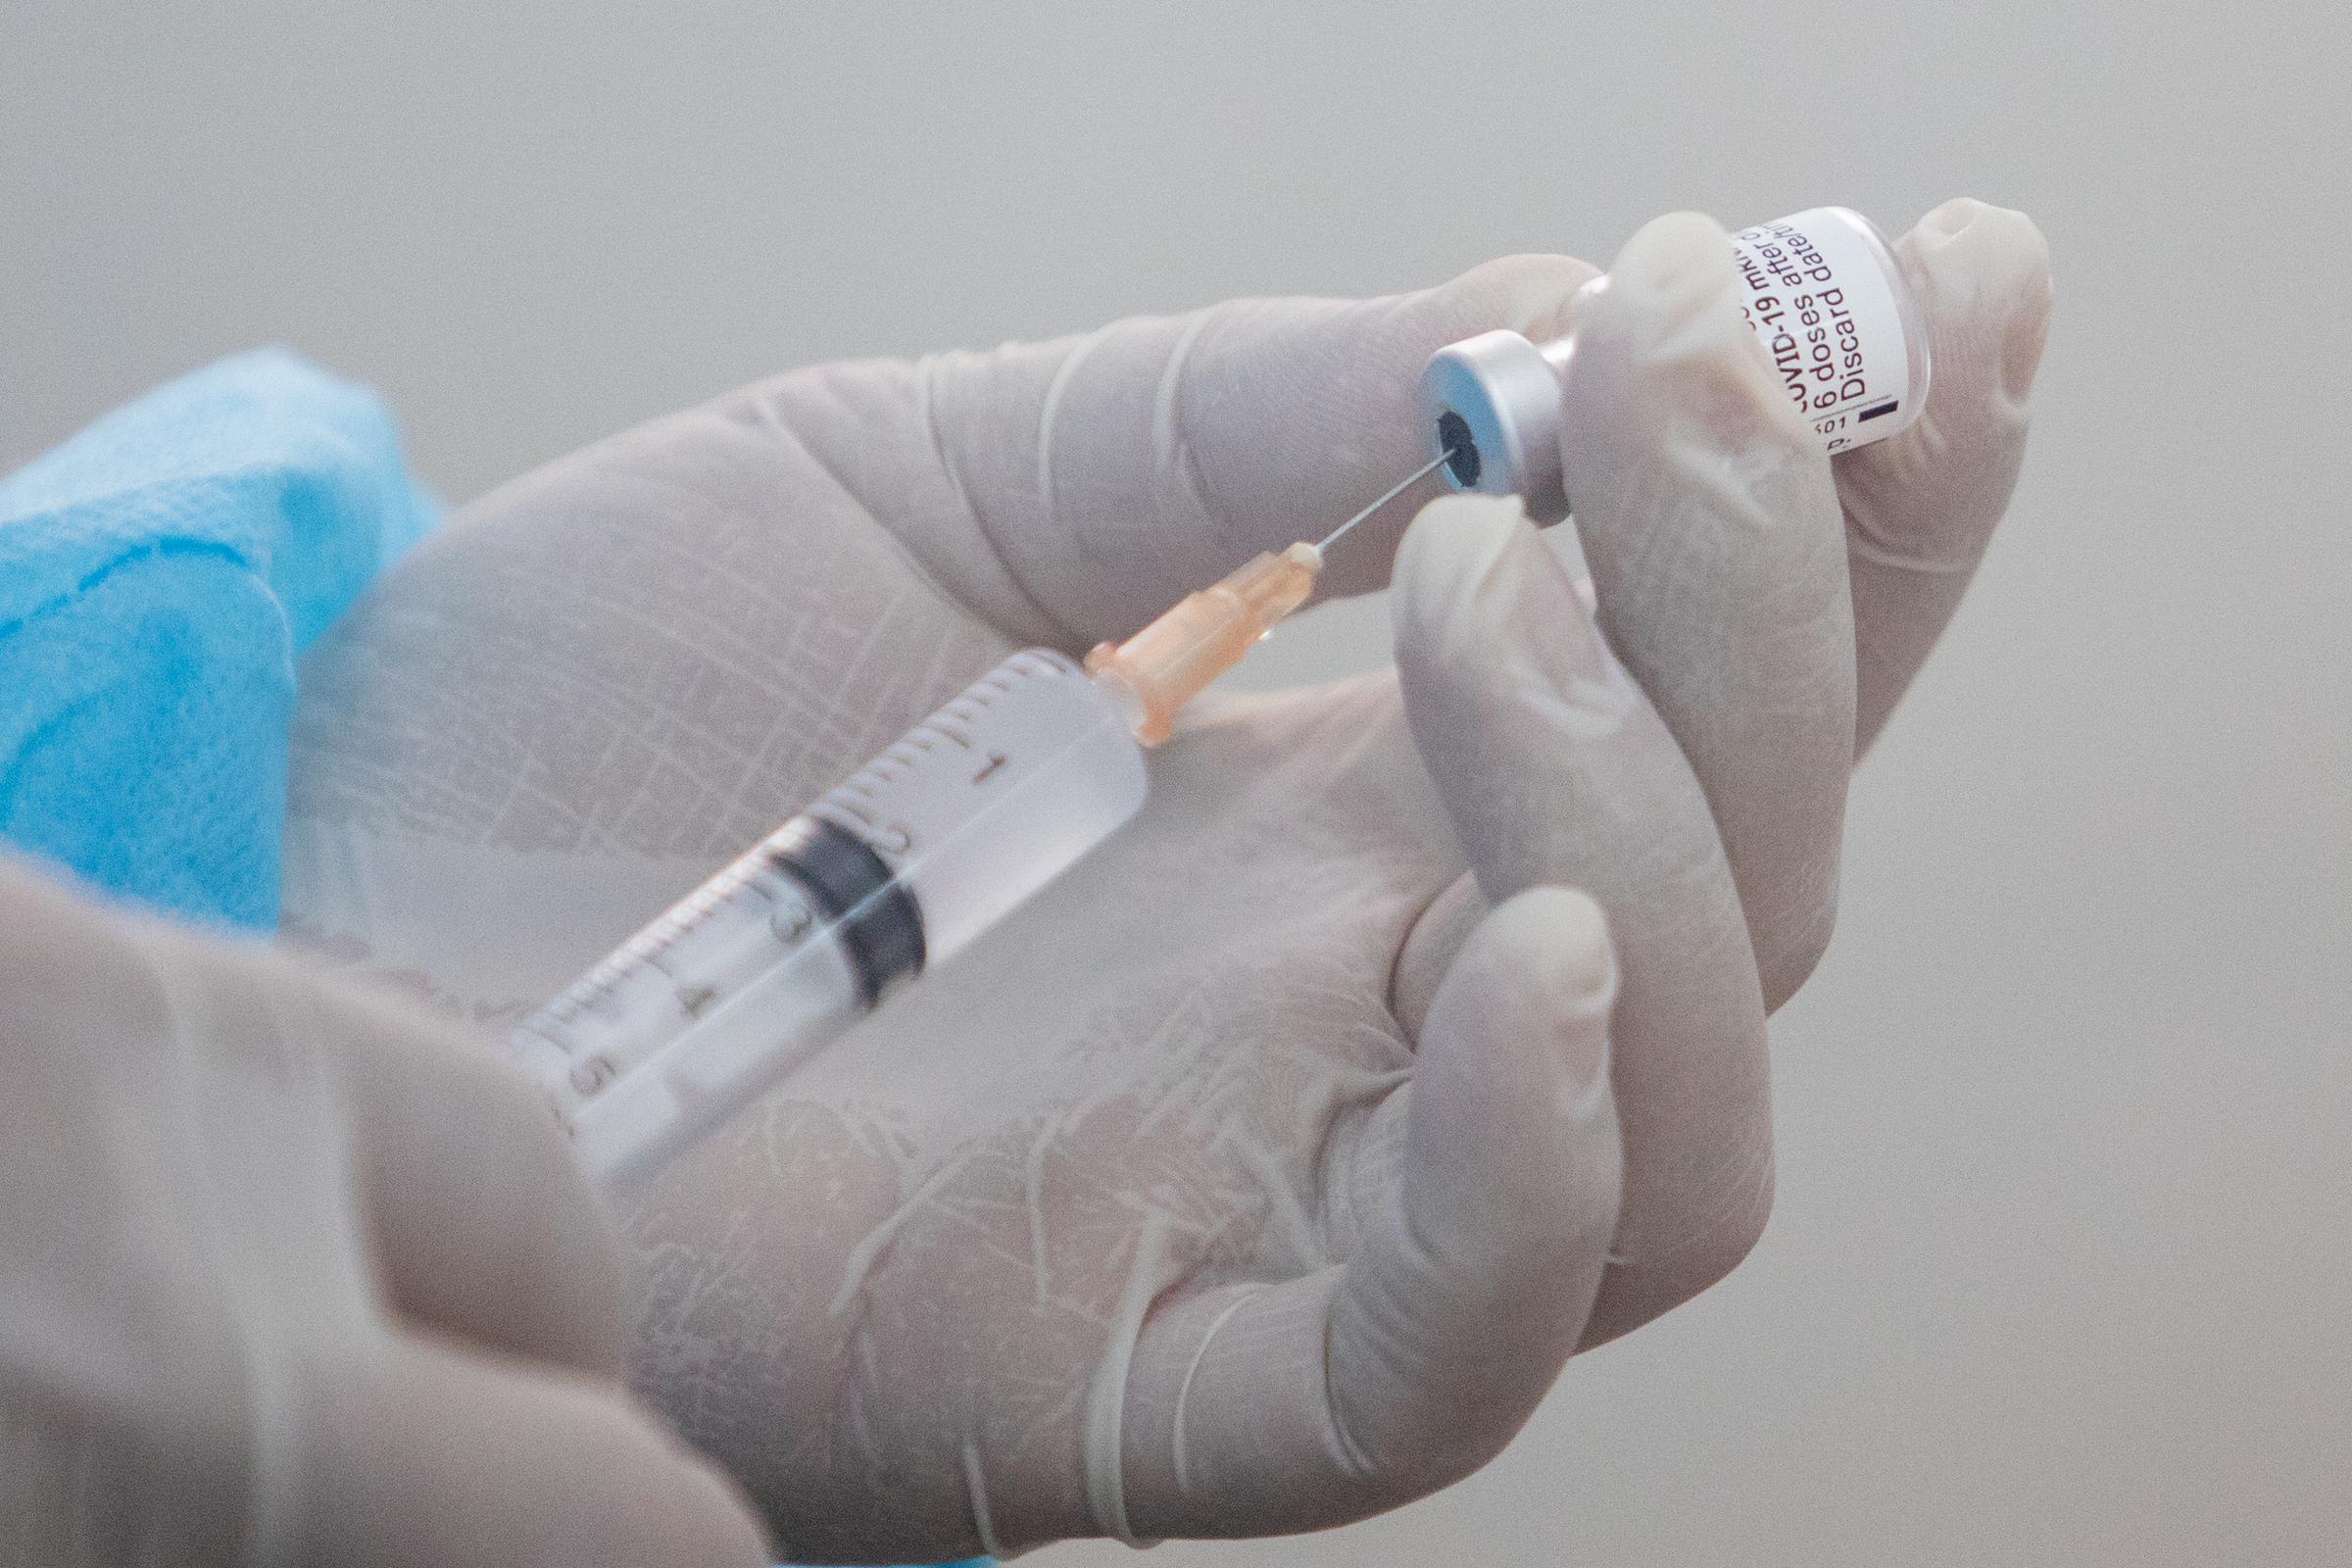 Nữ sinh ở Quảng Trị tử vong sau 7 ngày tiêm vaccine Covid - VnExpress Sức  khỏe